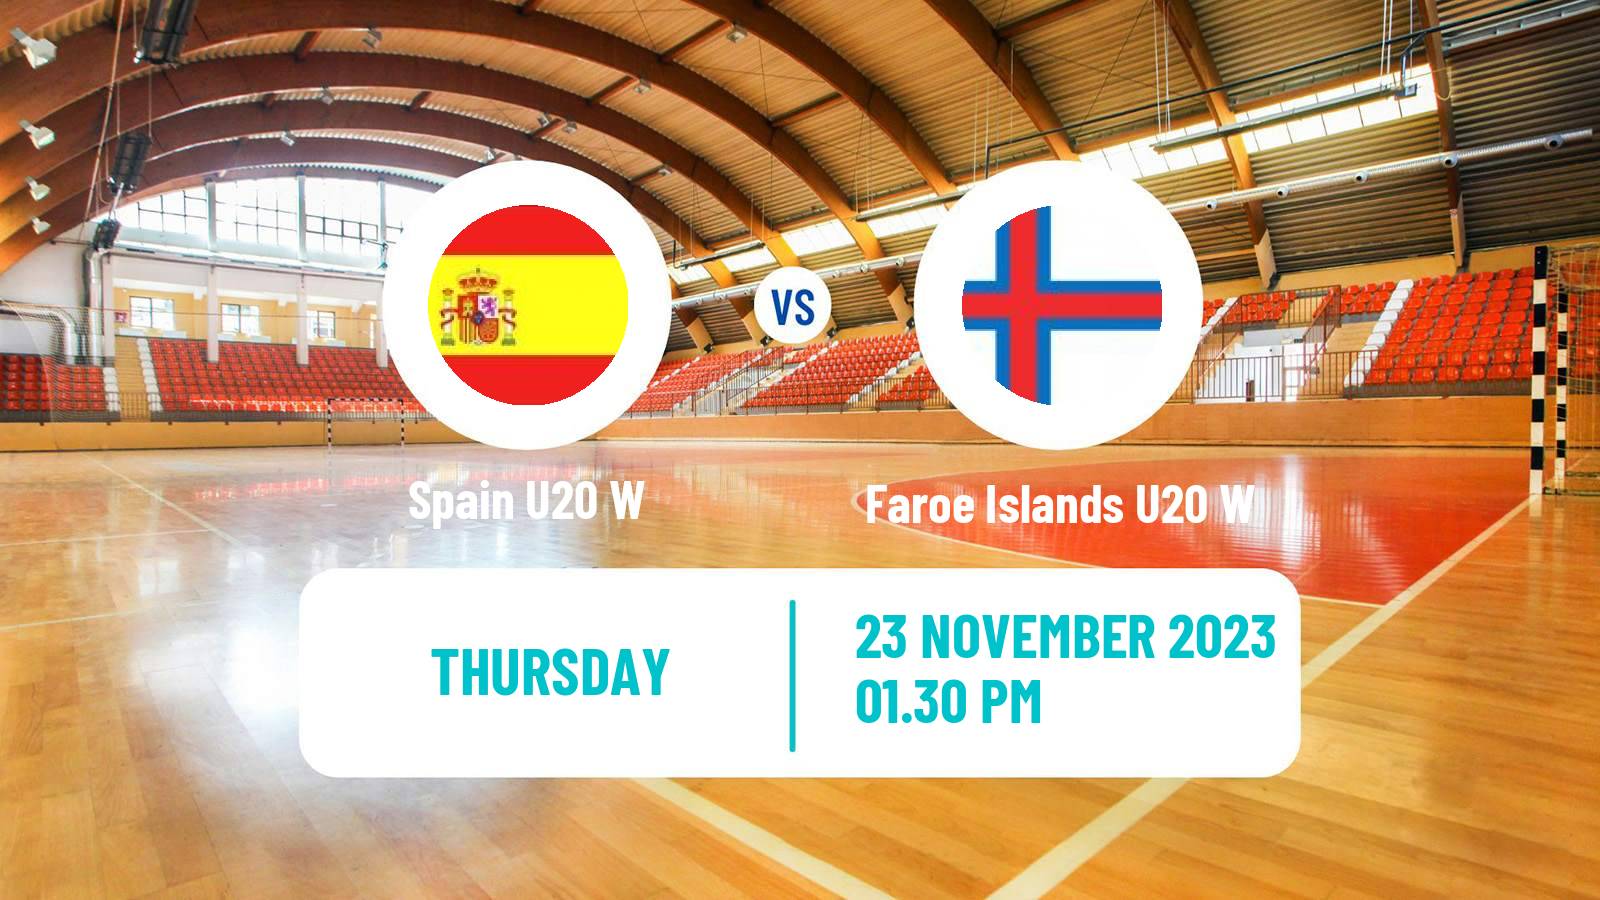 Handball World Championship U20 Handball Women Spain U20 W - Faroe Islands U20 W